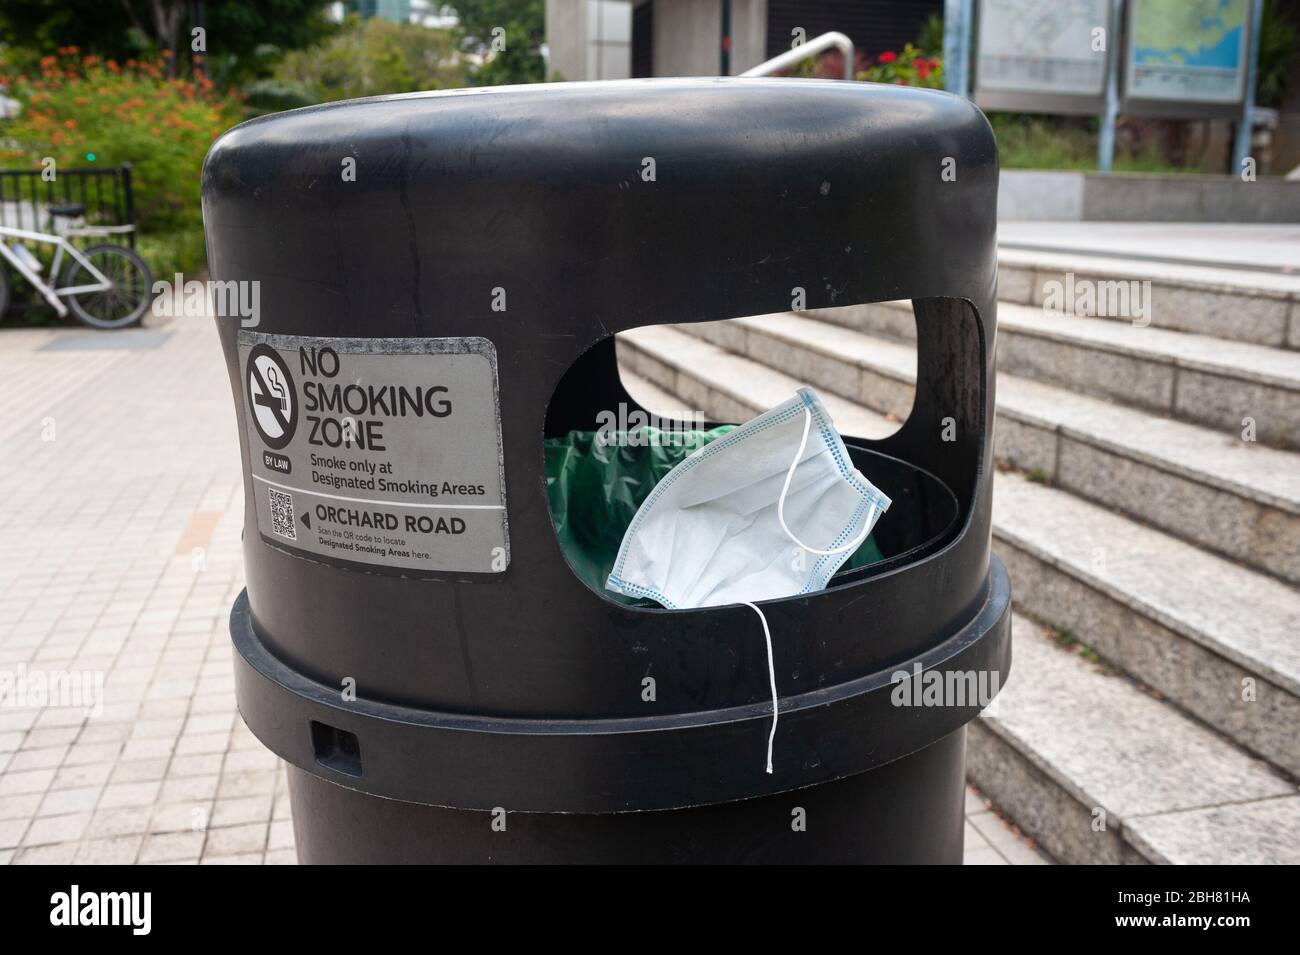 02.04.2020, Singapour, Singapour - un porte-bouche jeté se trouve dans une poubelle  devant une station de métro du centre-ville. 0SL200402D031CAROE Photo Stock  - Alamy